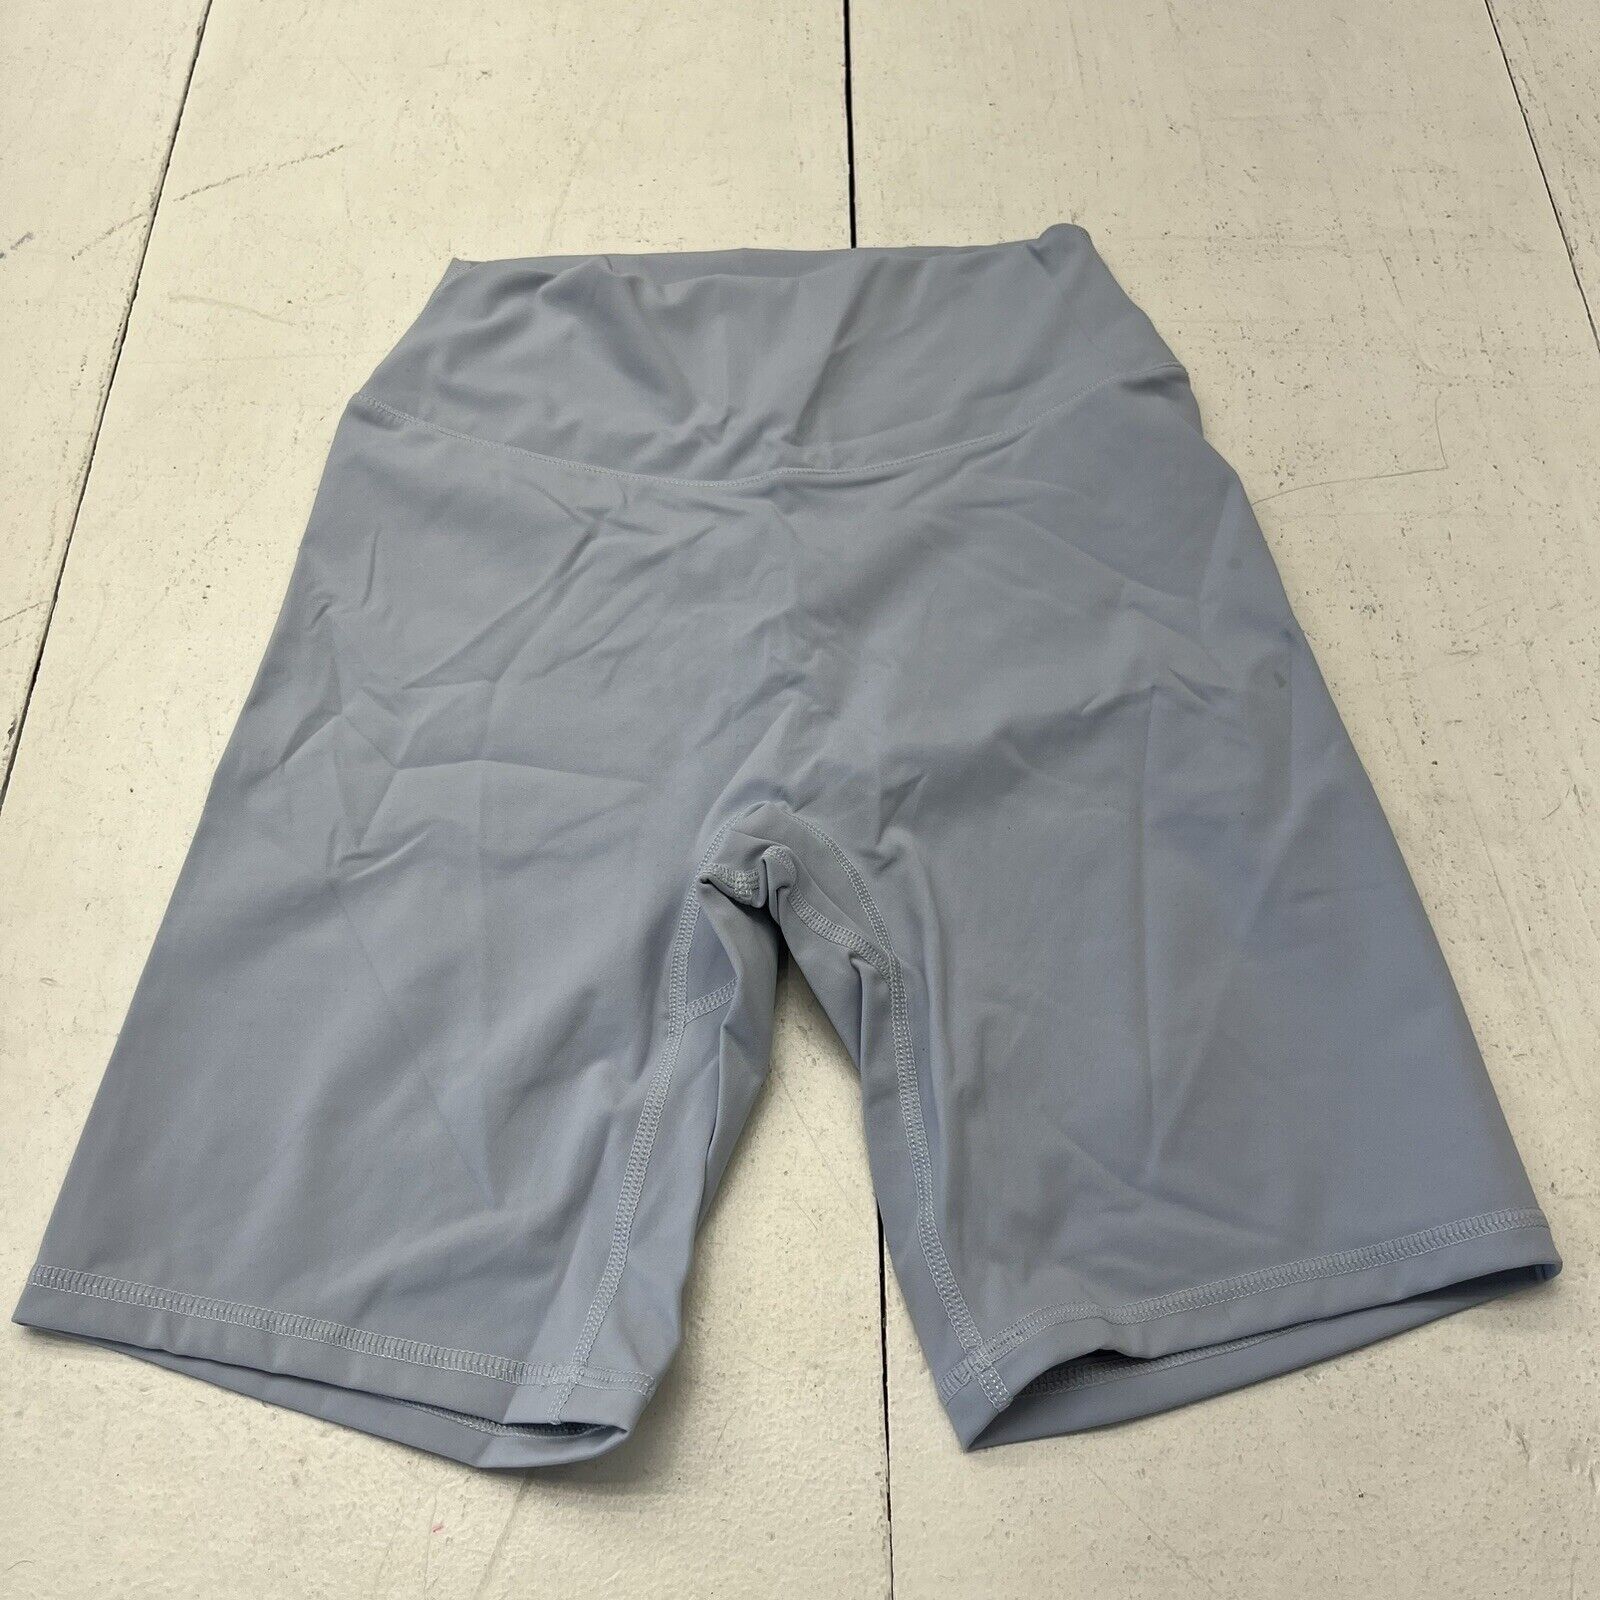 Sunzel Light Blue 8” Biker Shorts Women's Size Small NEW - beyond